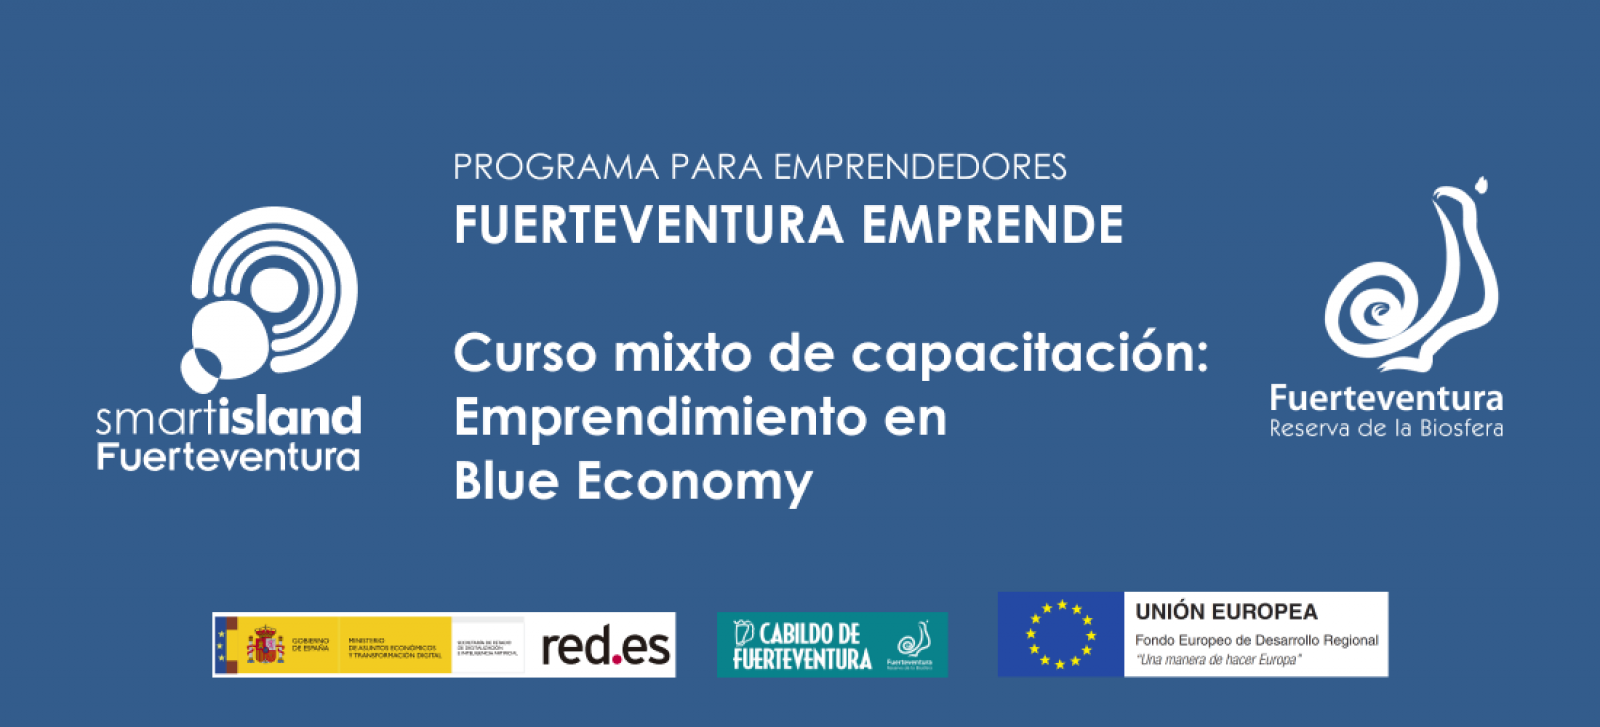 Curso mixto de capacitación: Emprendimiento en Blue Economy